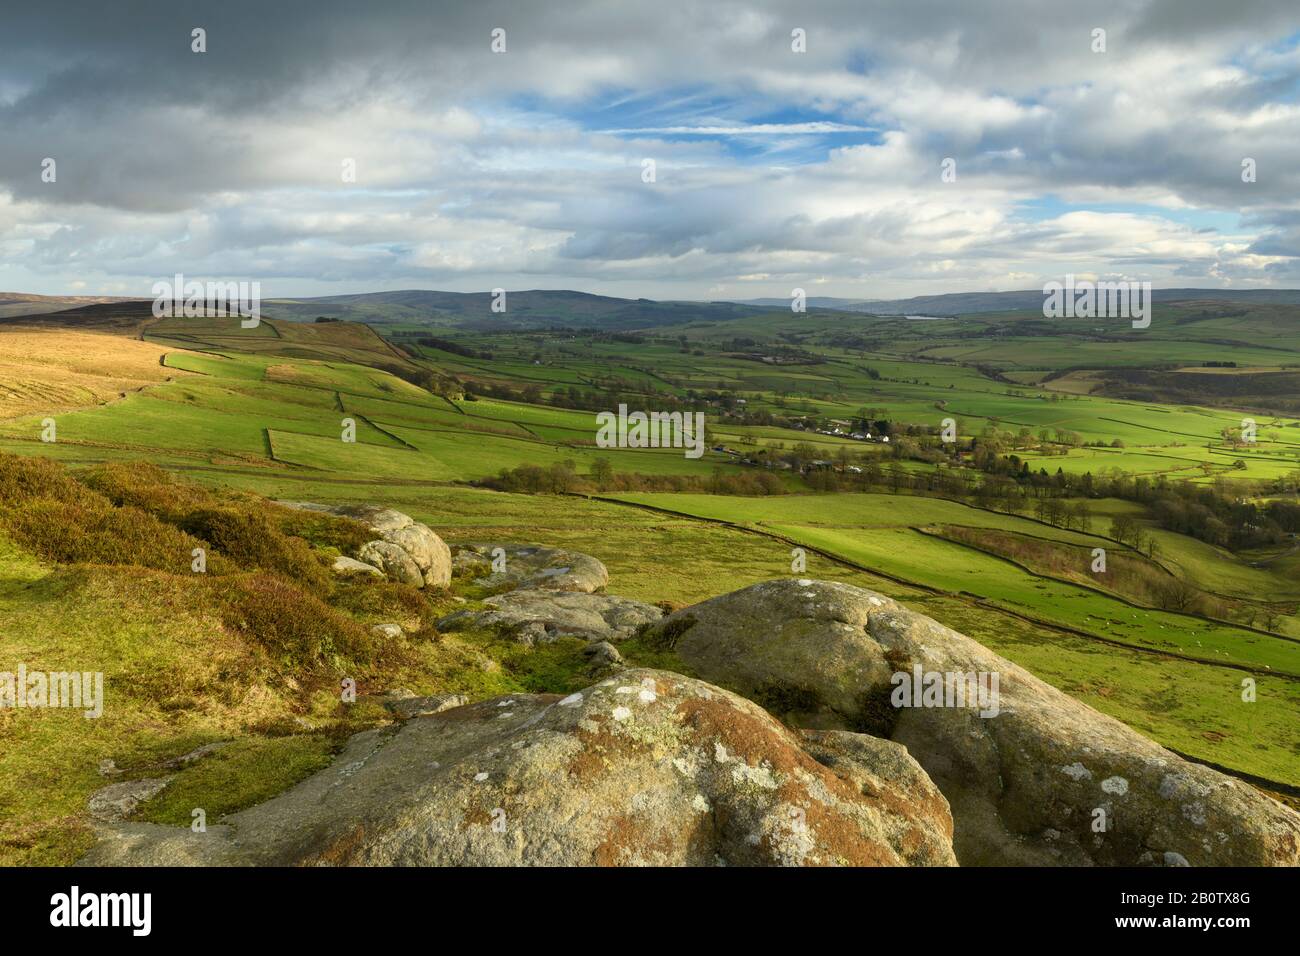 Landschaftlich schöner Blick von Embsay Crag (sonnenbeleuchtete Fells oder Moore, Bauernfelder im Tal, hohe Hügel, dramatischer Himmel) - North Yorkshire, England, Großbritannien. Stockfoto